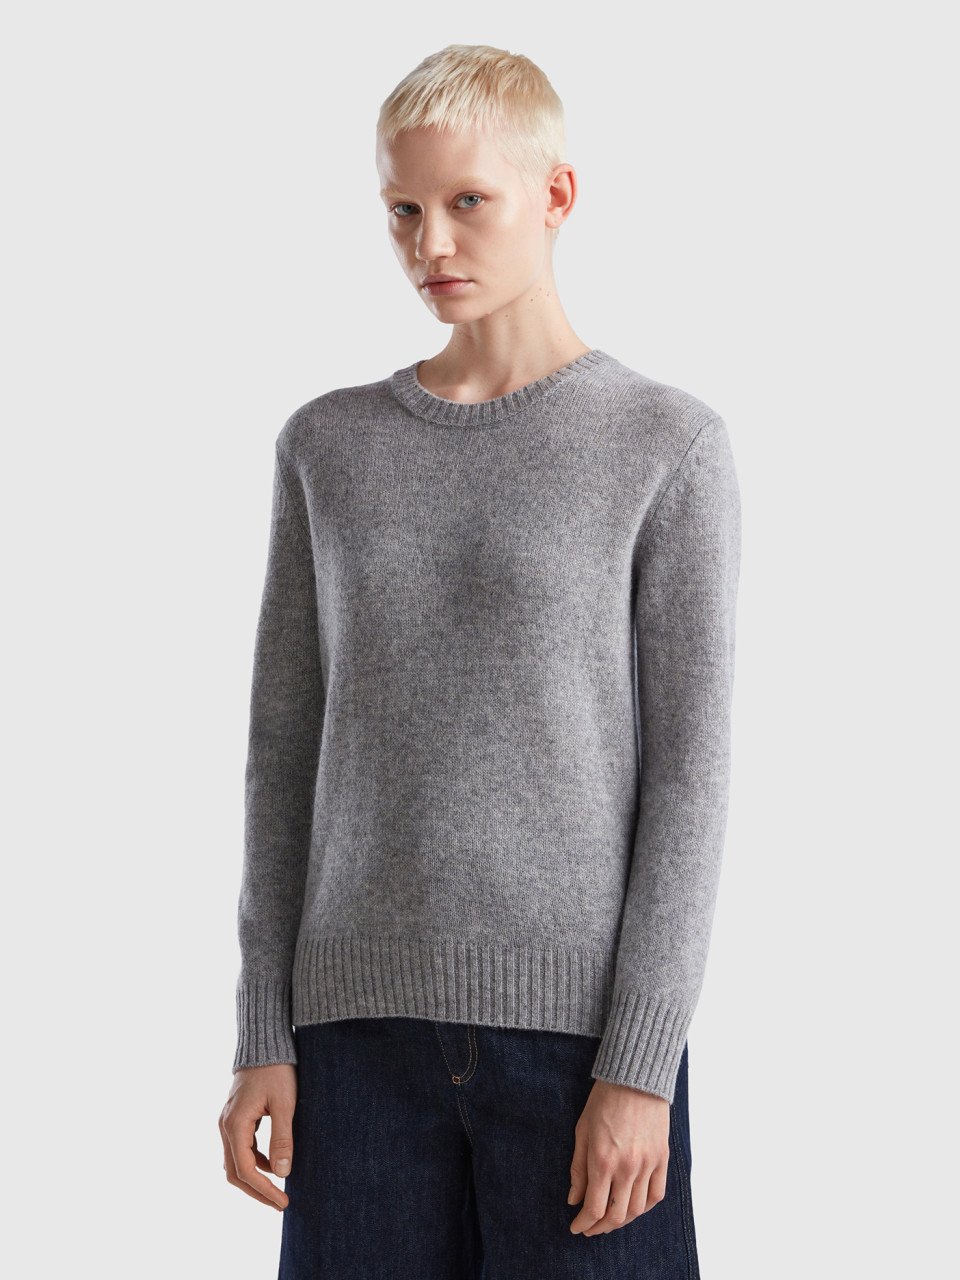 Benetton, Sweater In Pure Shetland Wool, Light Gray, Women